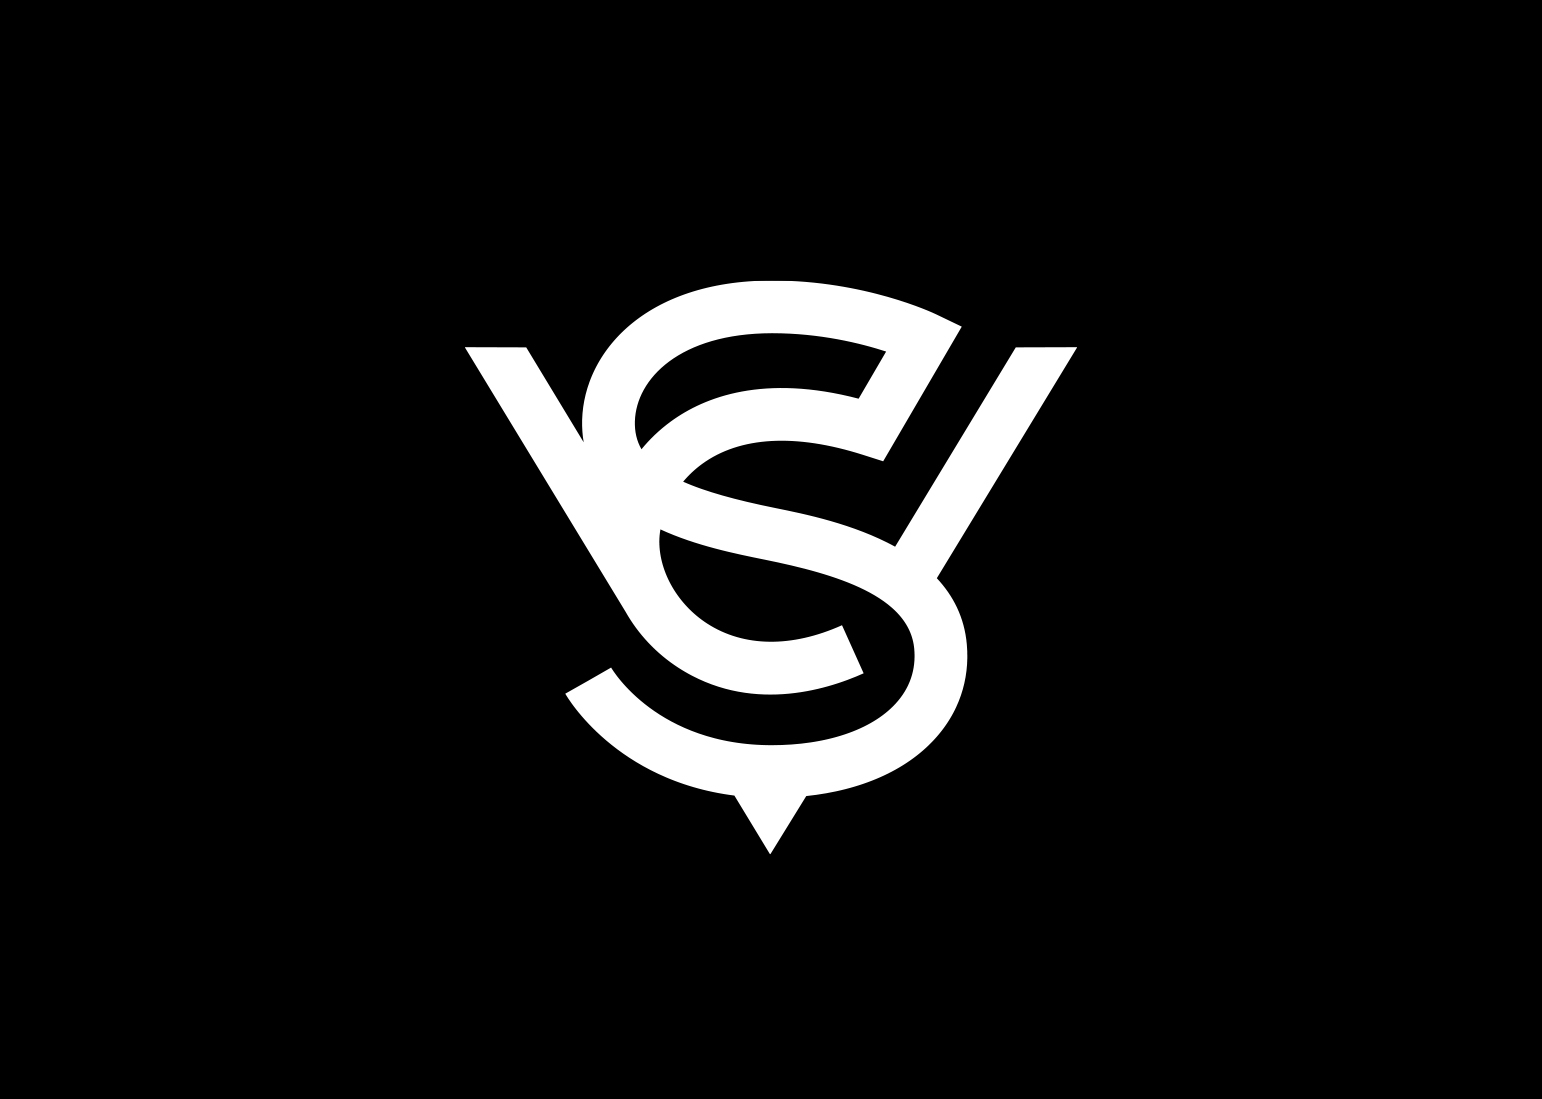 SCV vignette logo